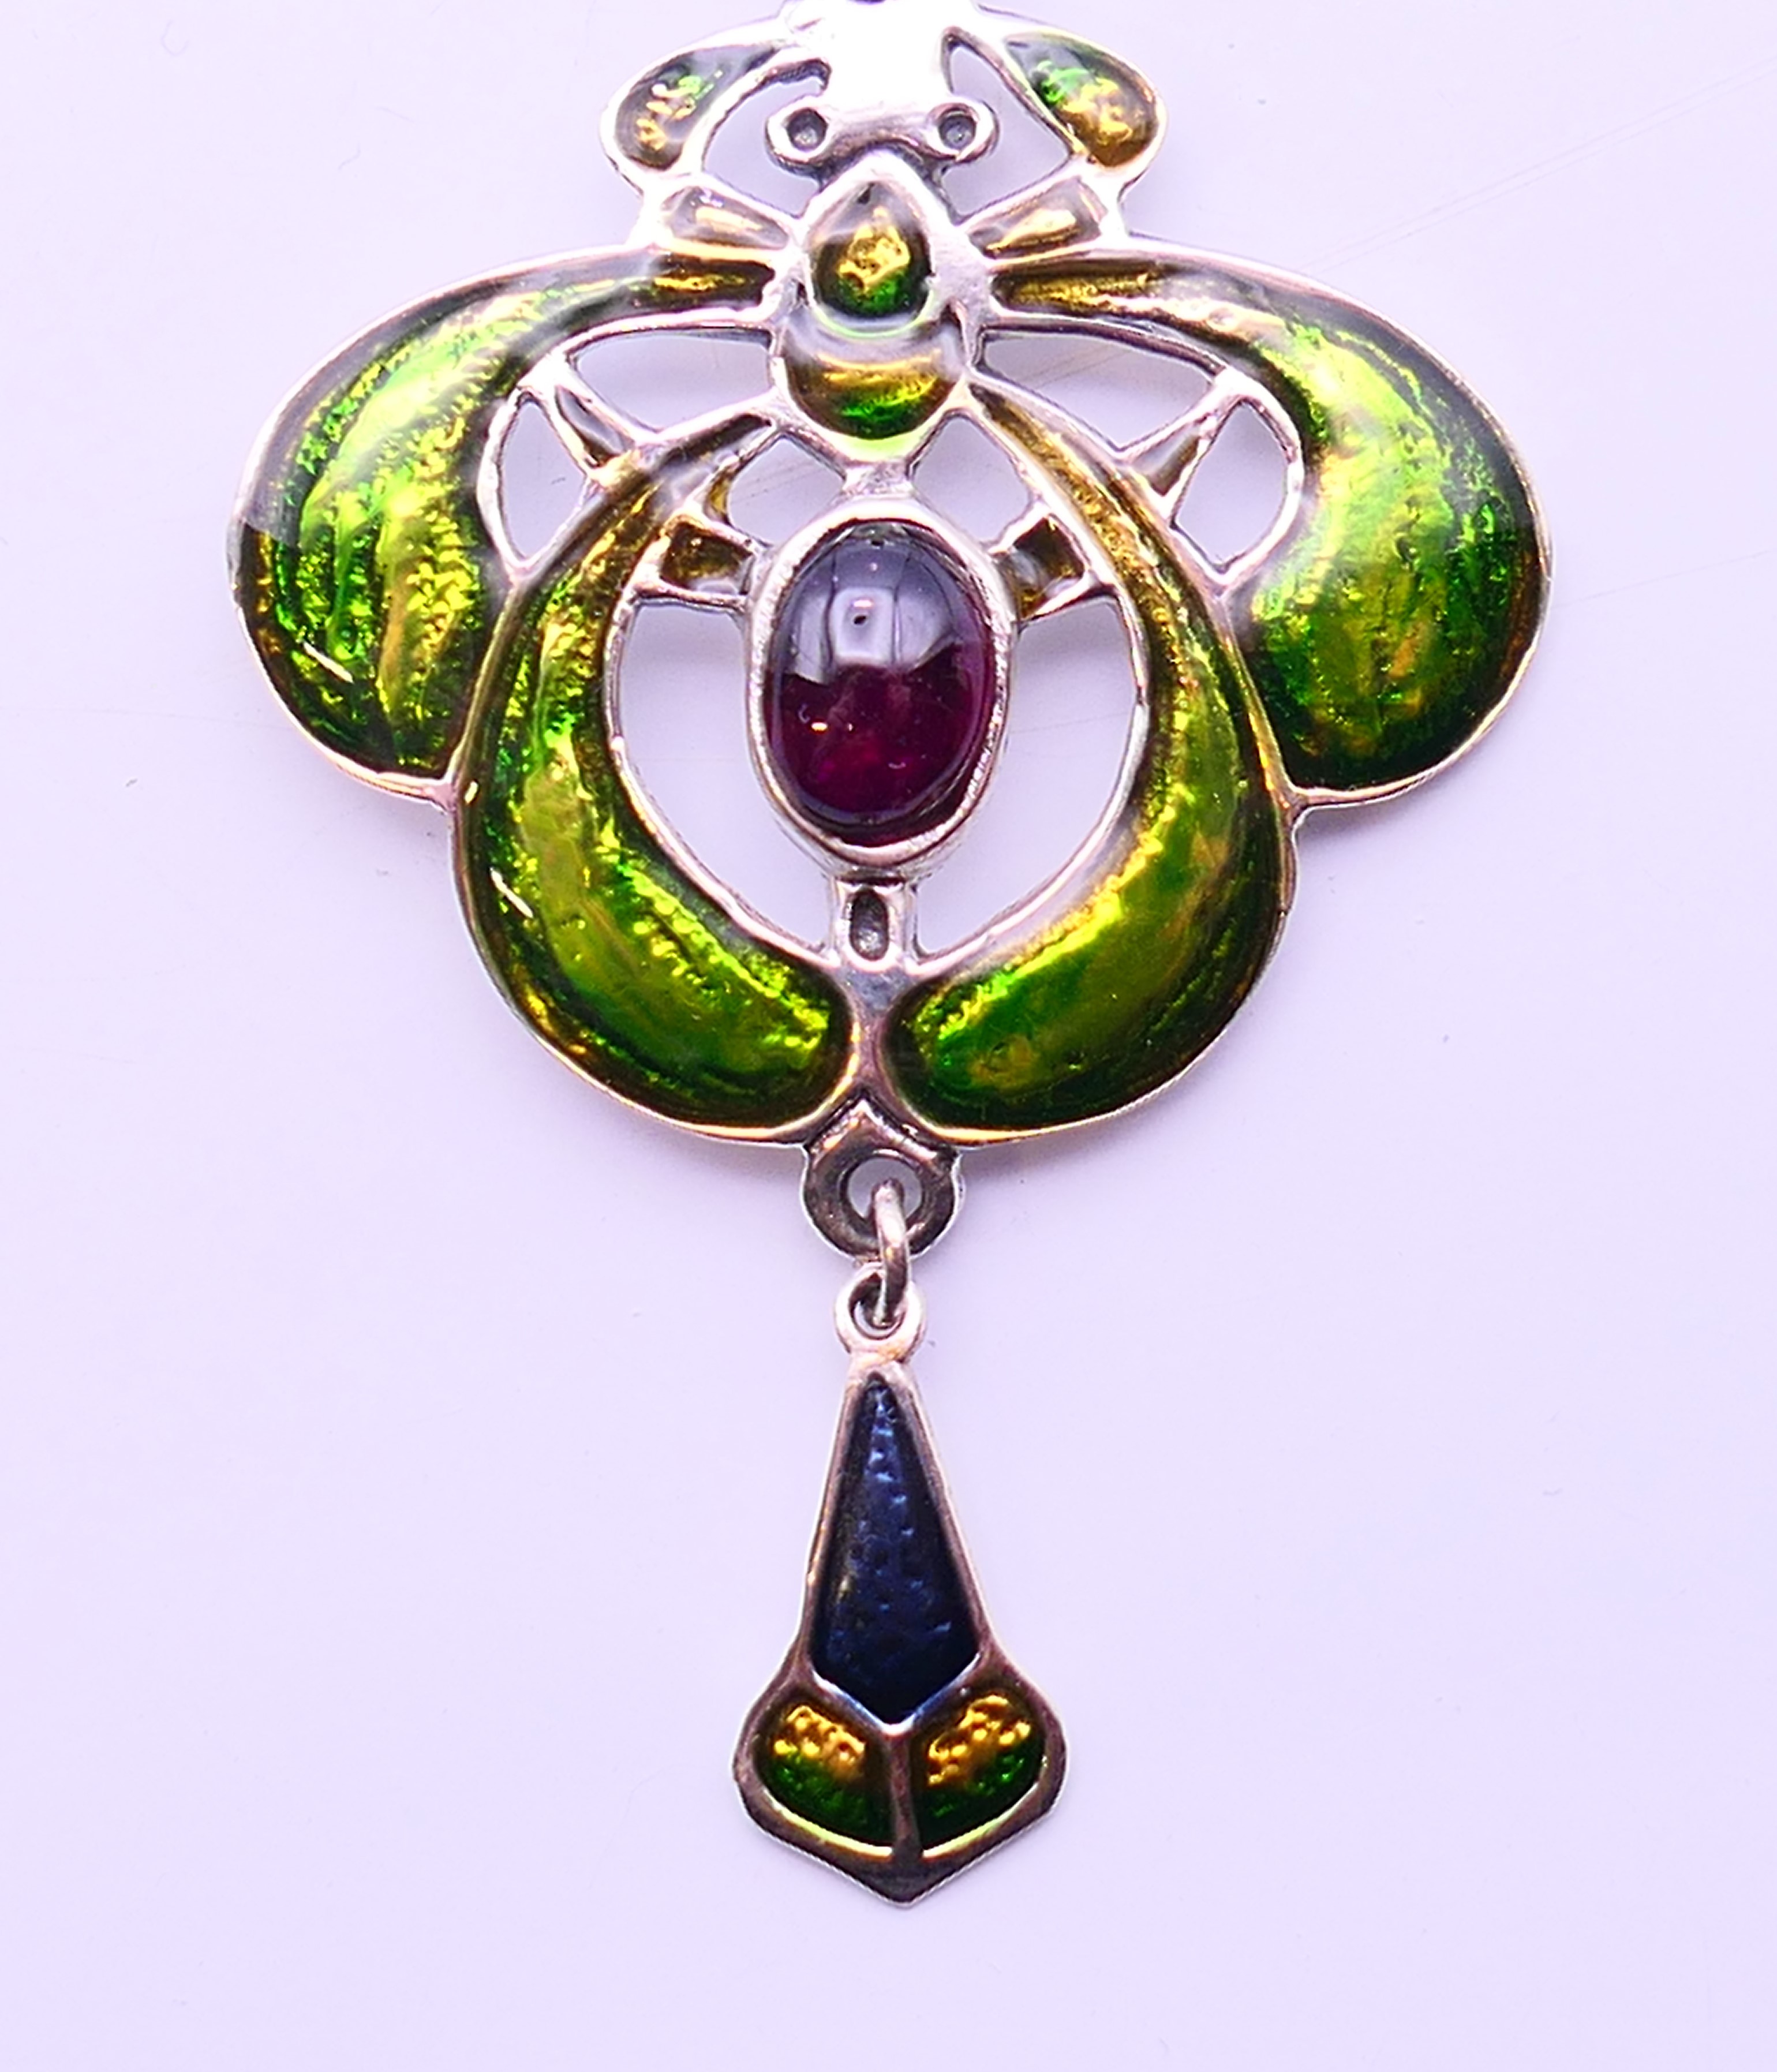 An Art Nouveau-style pendant. 6.5 cm high. - Image 2 of 4